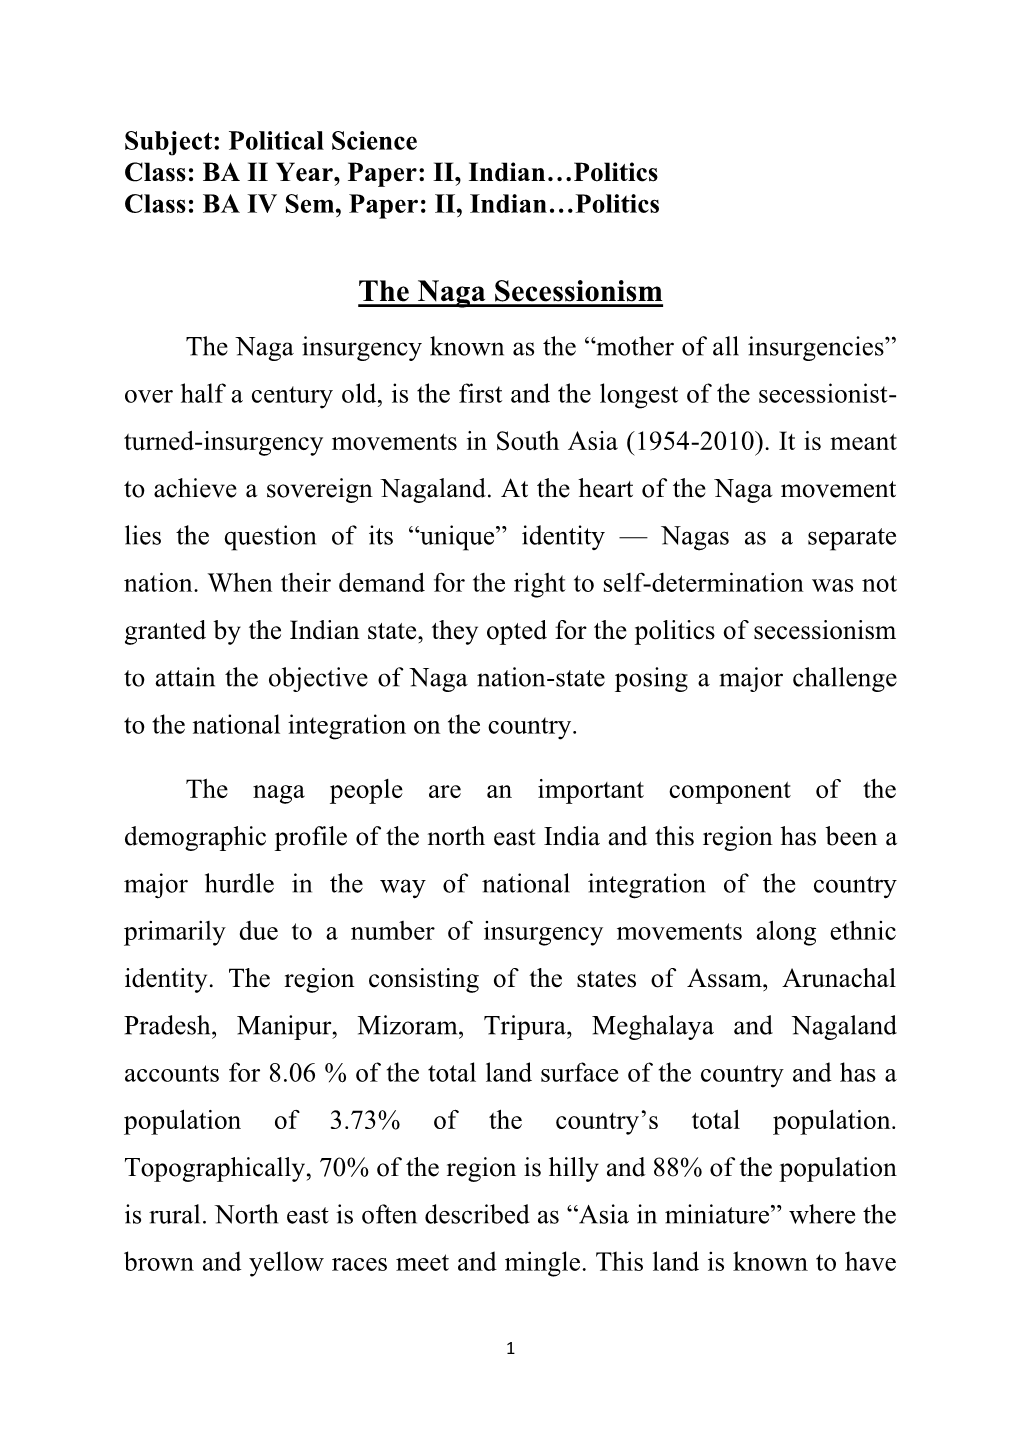 The Naga Secessionism